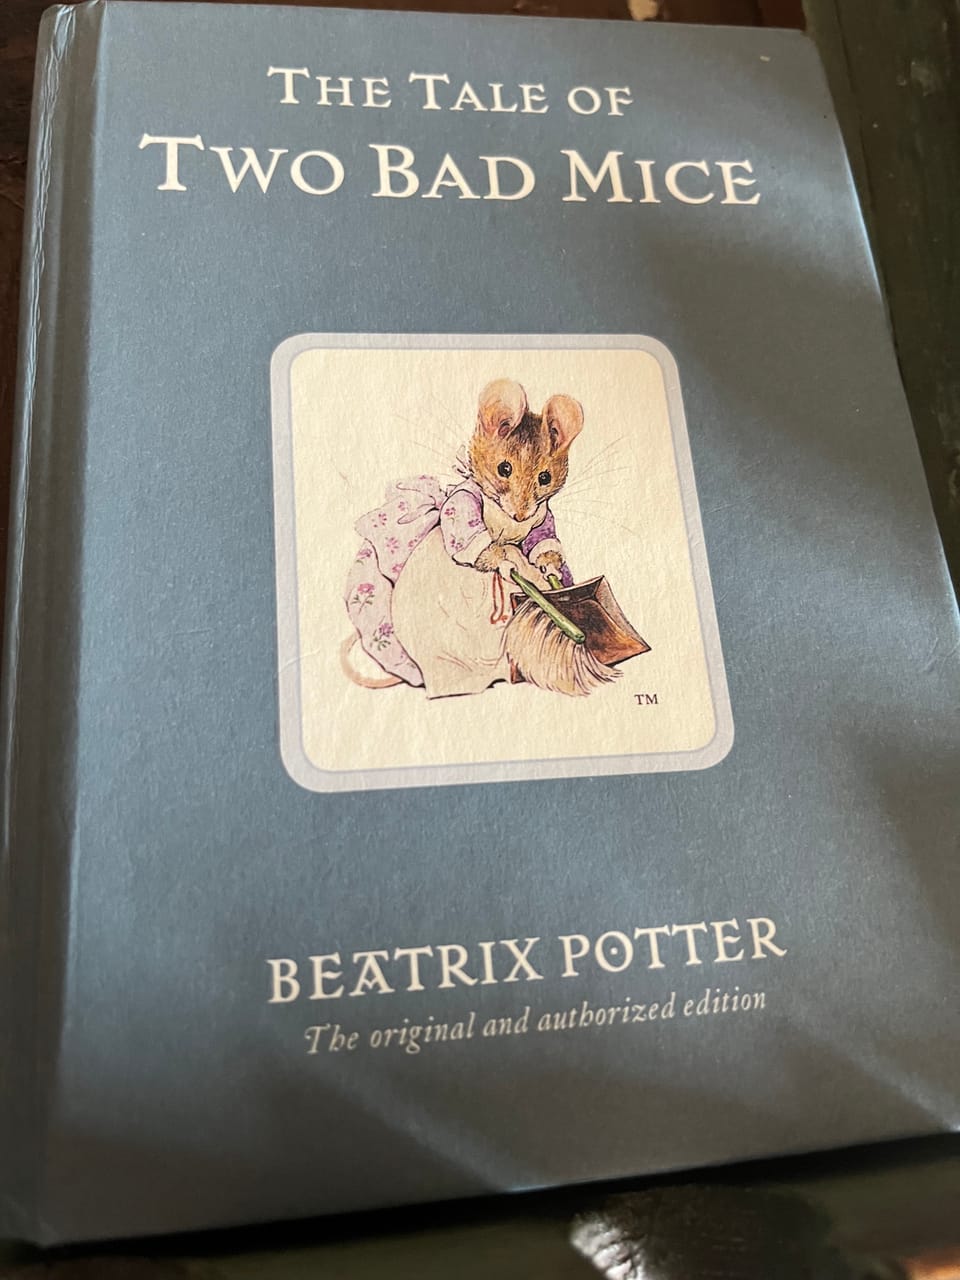 Beatrix Potter - Fantasy and Fun in Art